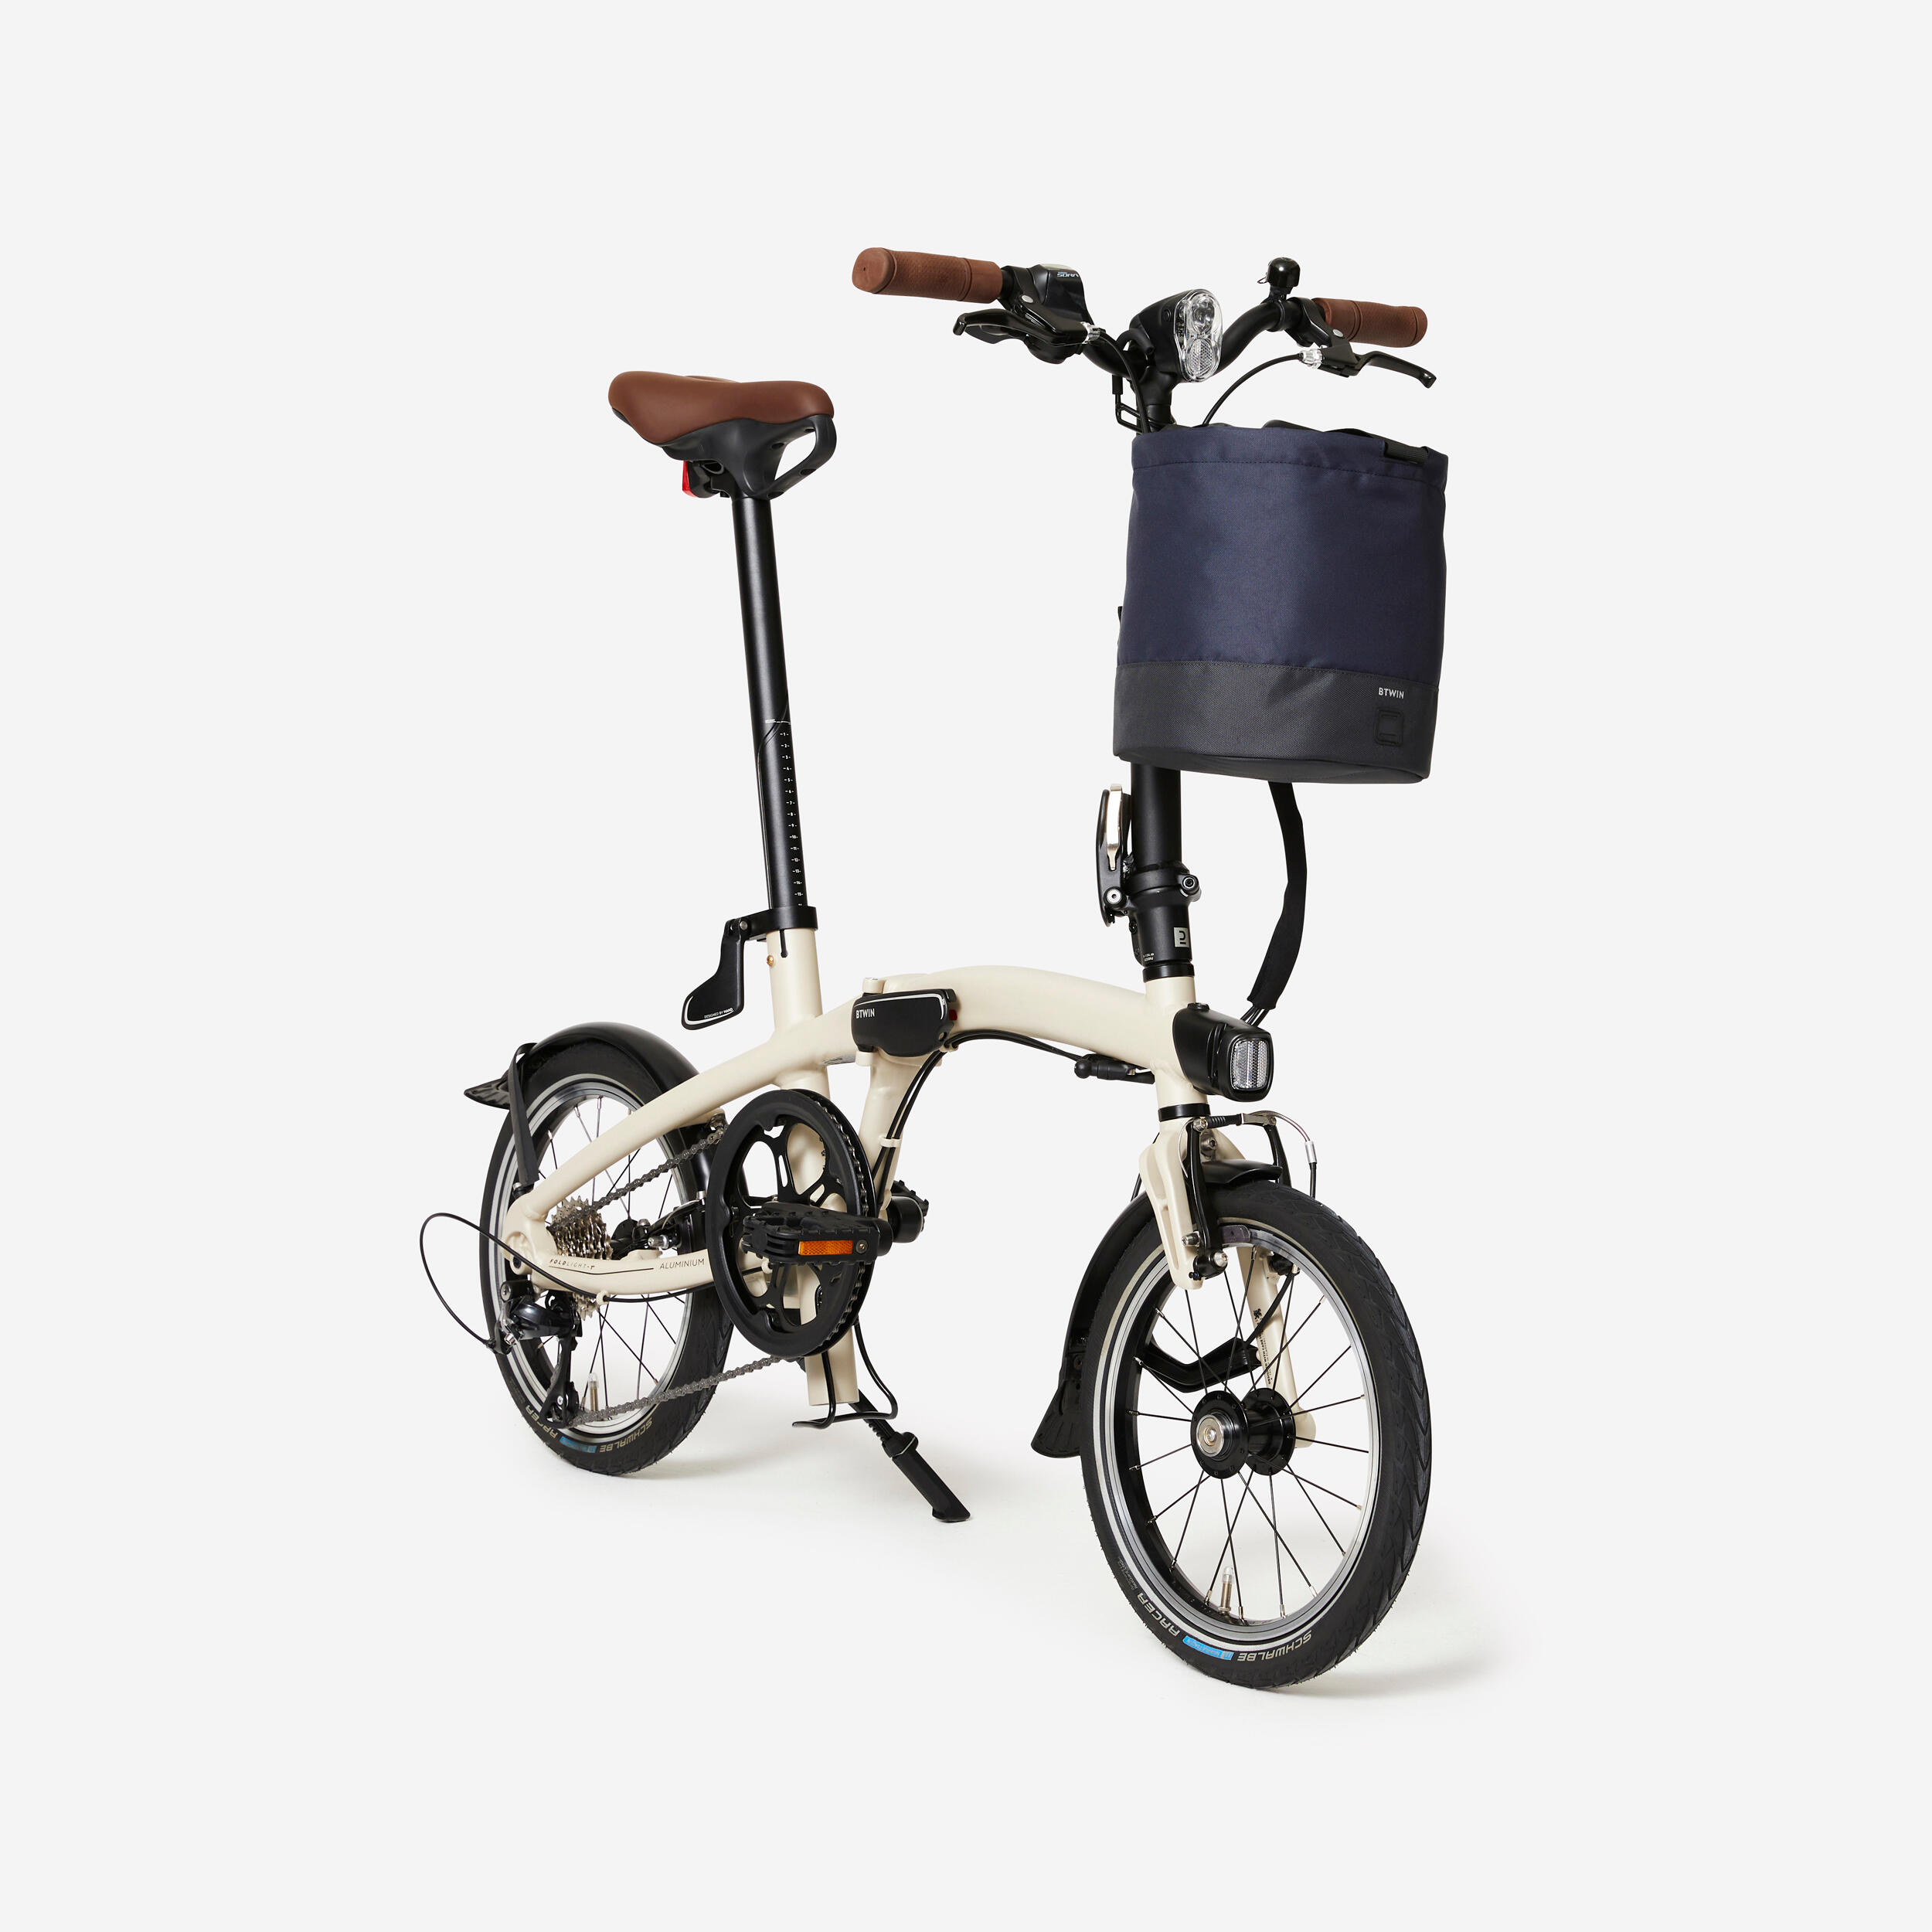 Compactable Folding Bike 10 L Pannier with Shoulder Carry Strap - Blue 2/8